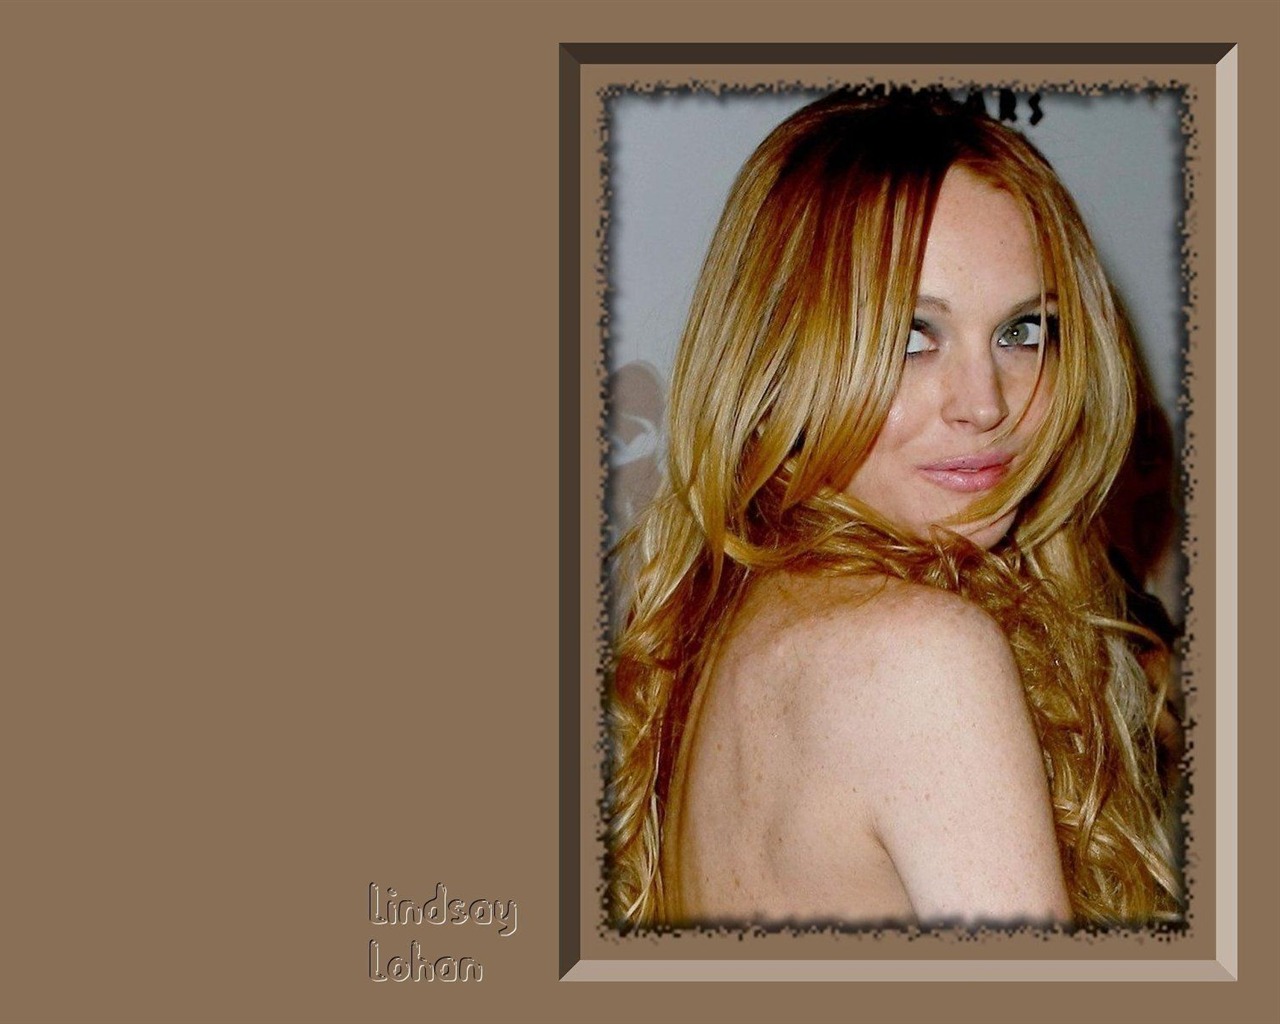 Lindsay Lohan 林赛·罗韩 美女壁纸16 - 1280x1024